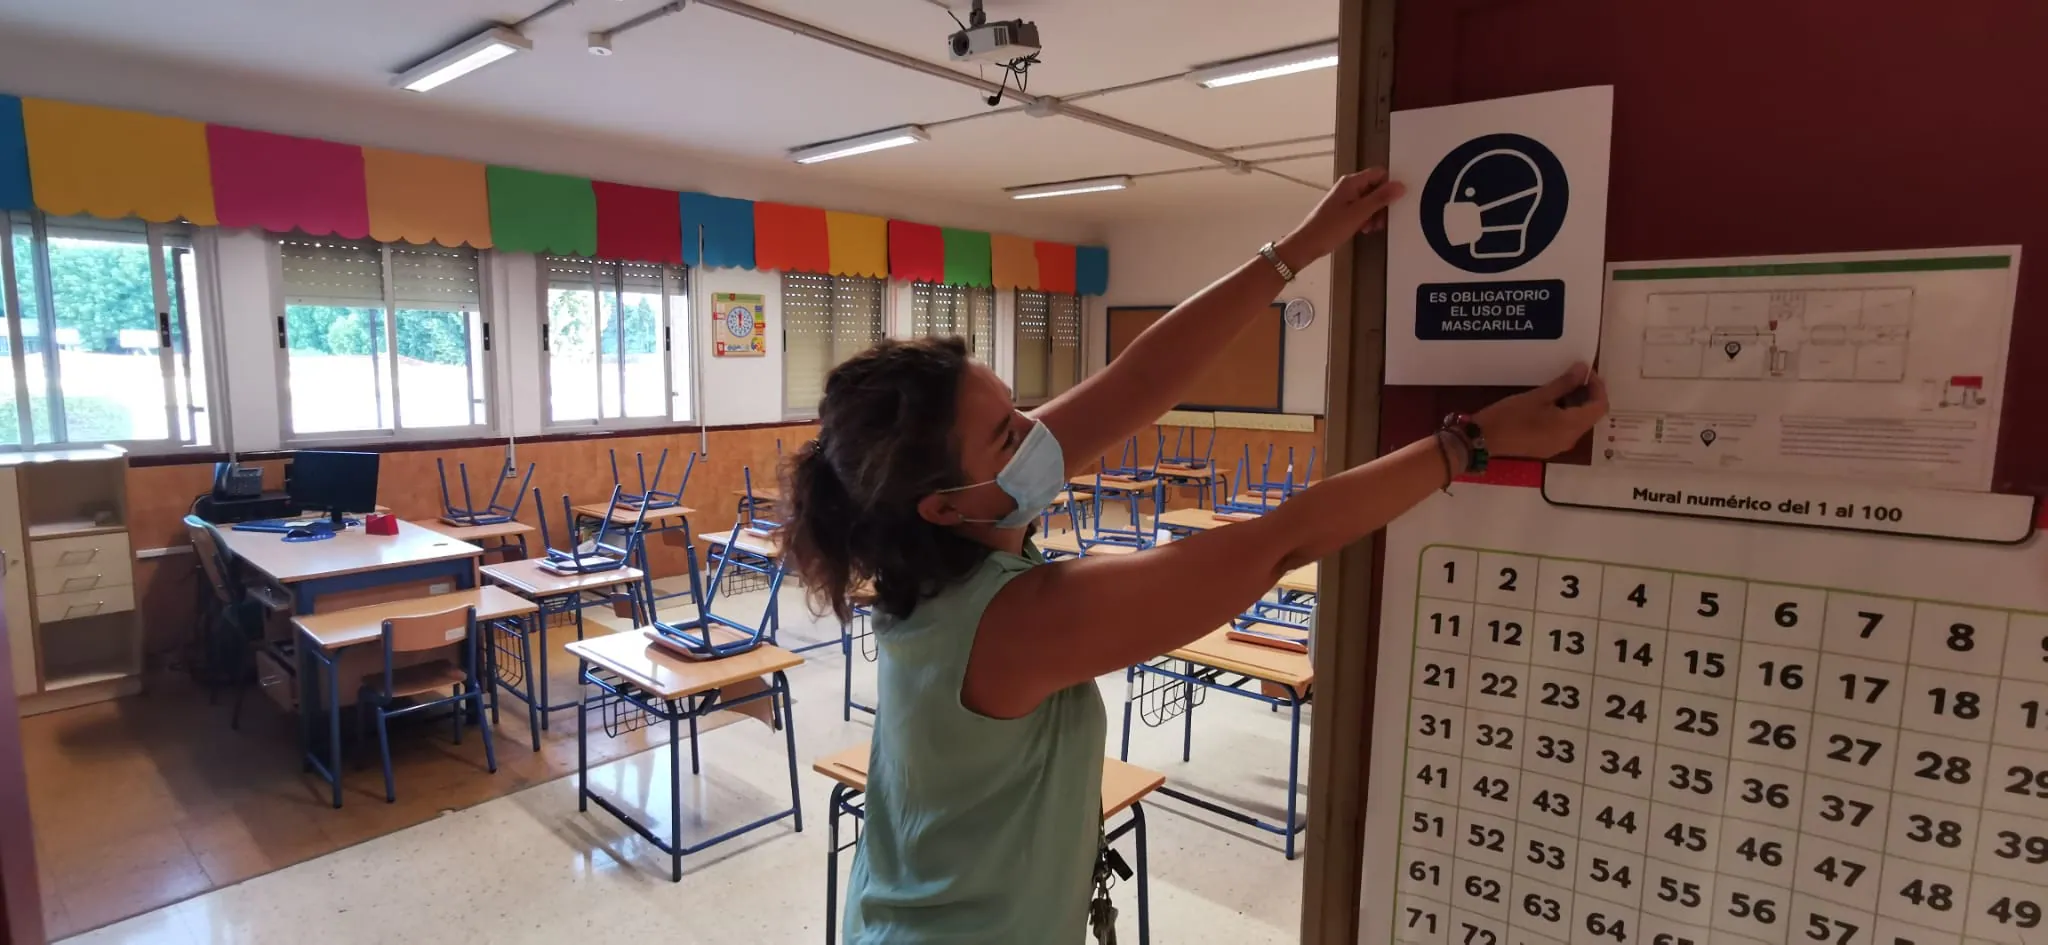 La directora del colegio Arturo Reyes de la capital coloca un cartel advirtiendo de la obligatoriedad de las mascarillas en el centro escolar.